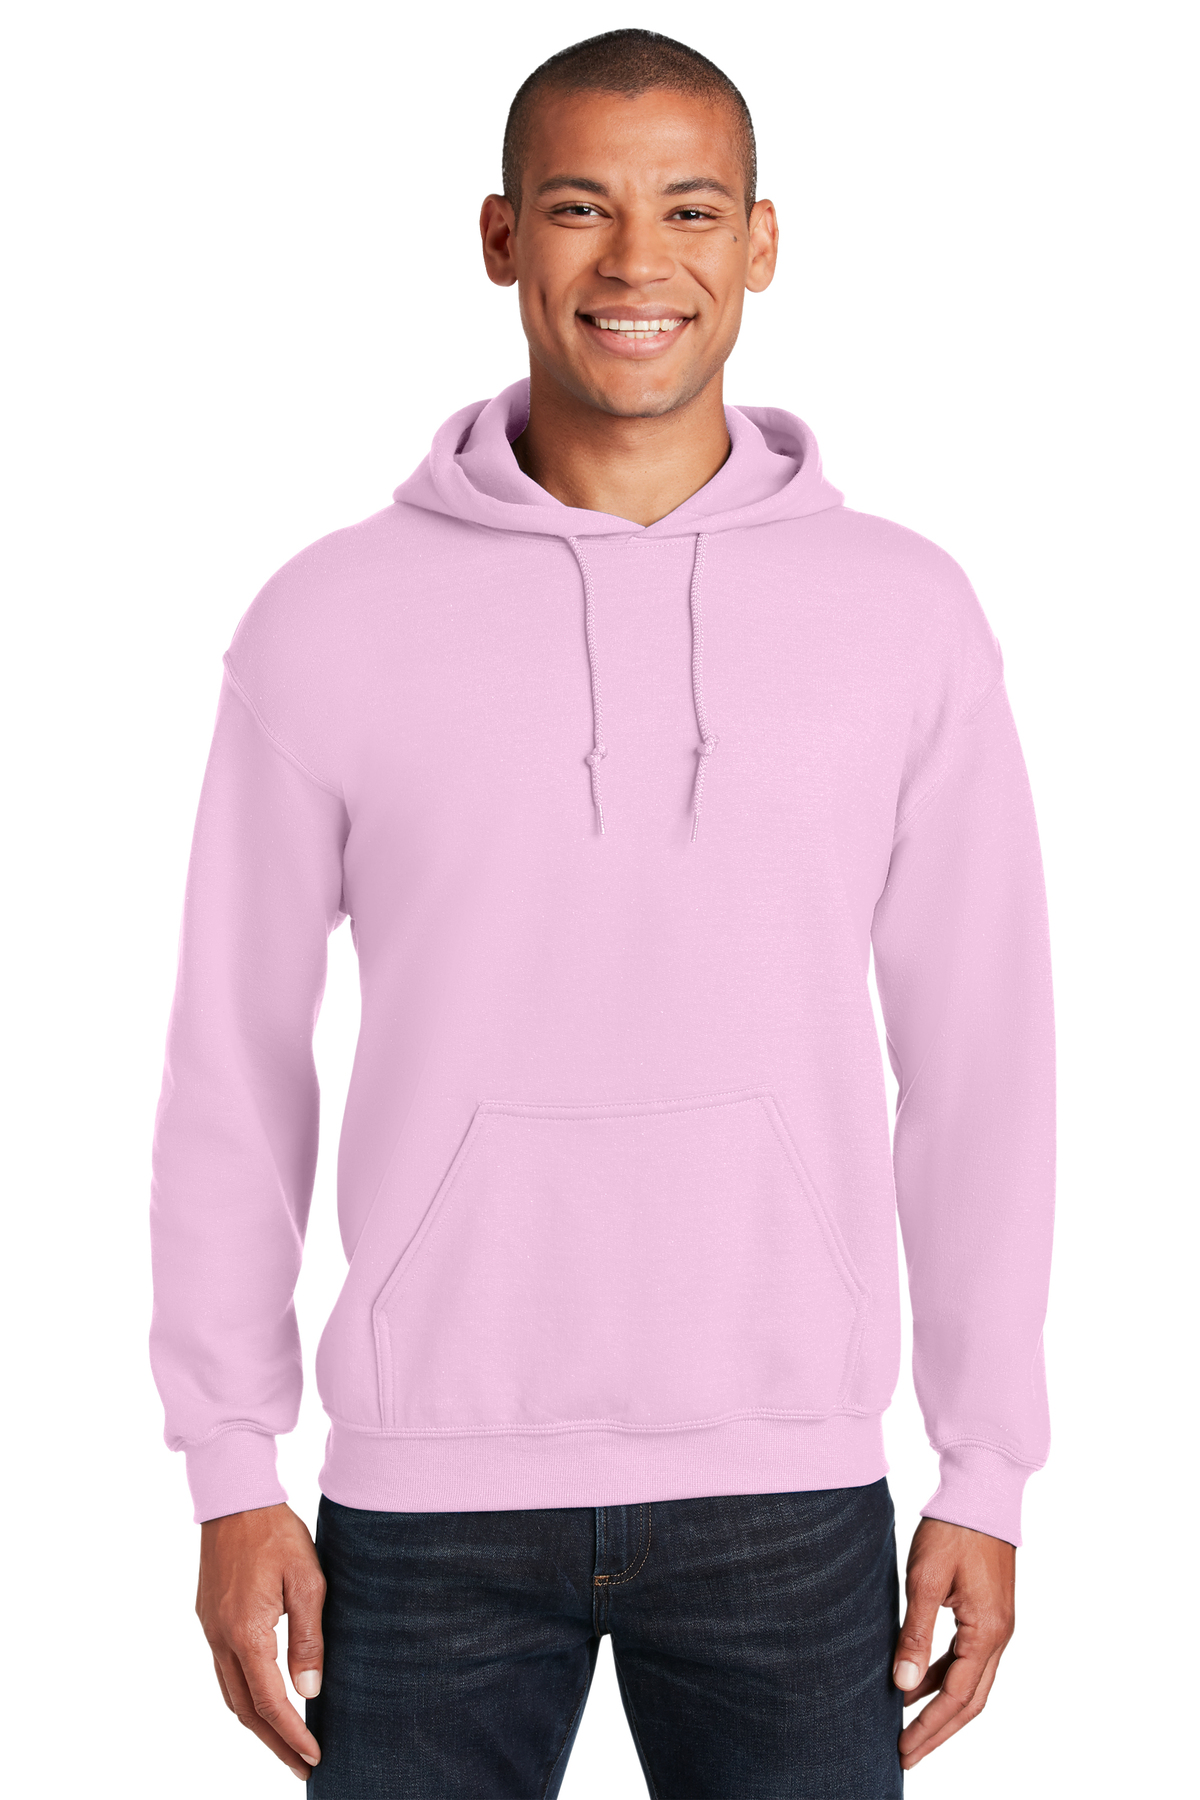 Gildan Embroidered Men's Heavy Blend Pullover Hooded Sweatshirt - Queensboro